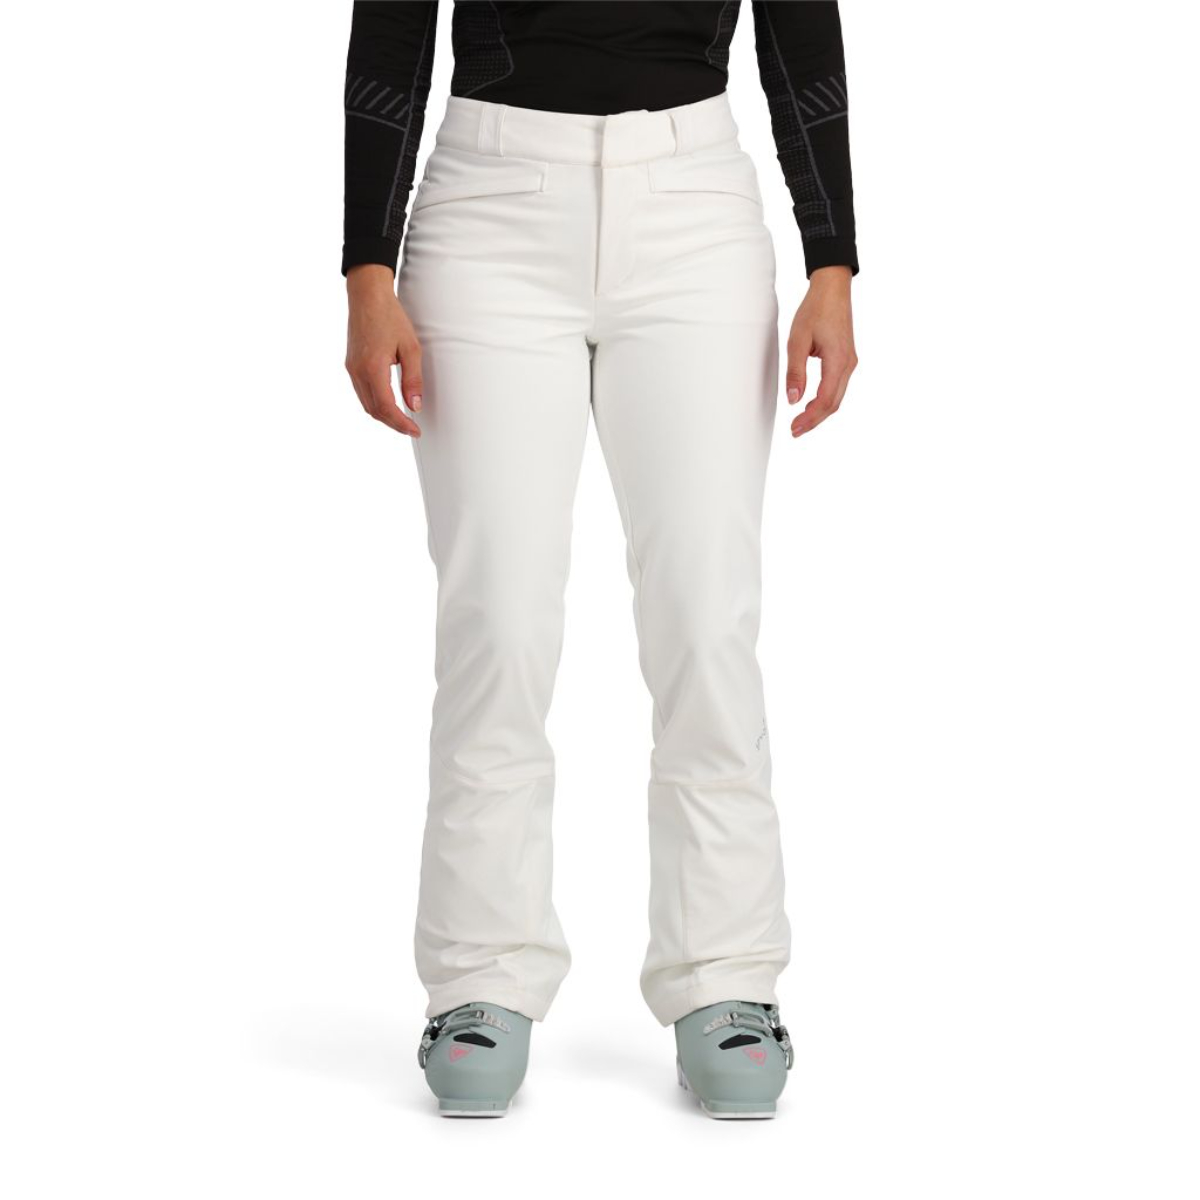 Lady Swarovski White Flakes Ski Pant • OGIER Official Website (US)